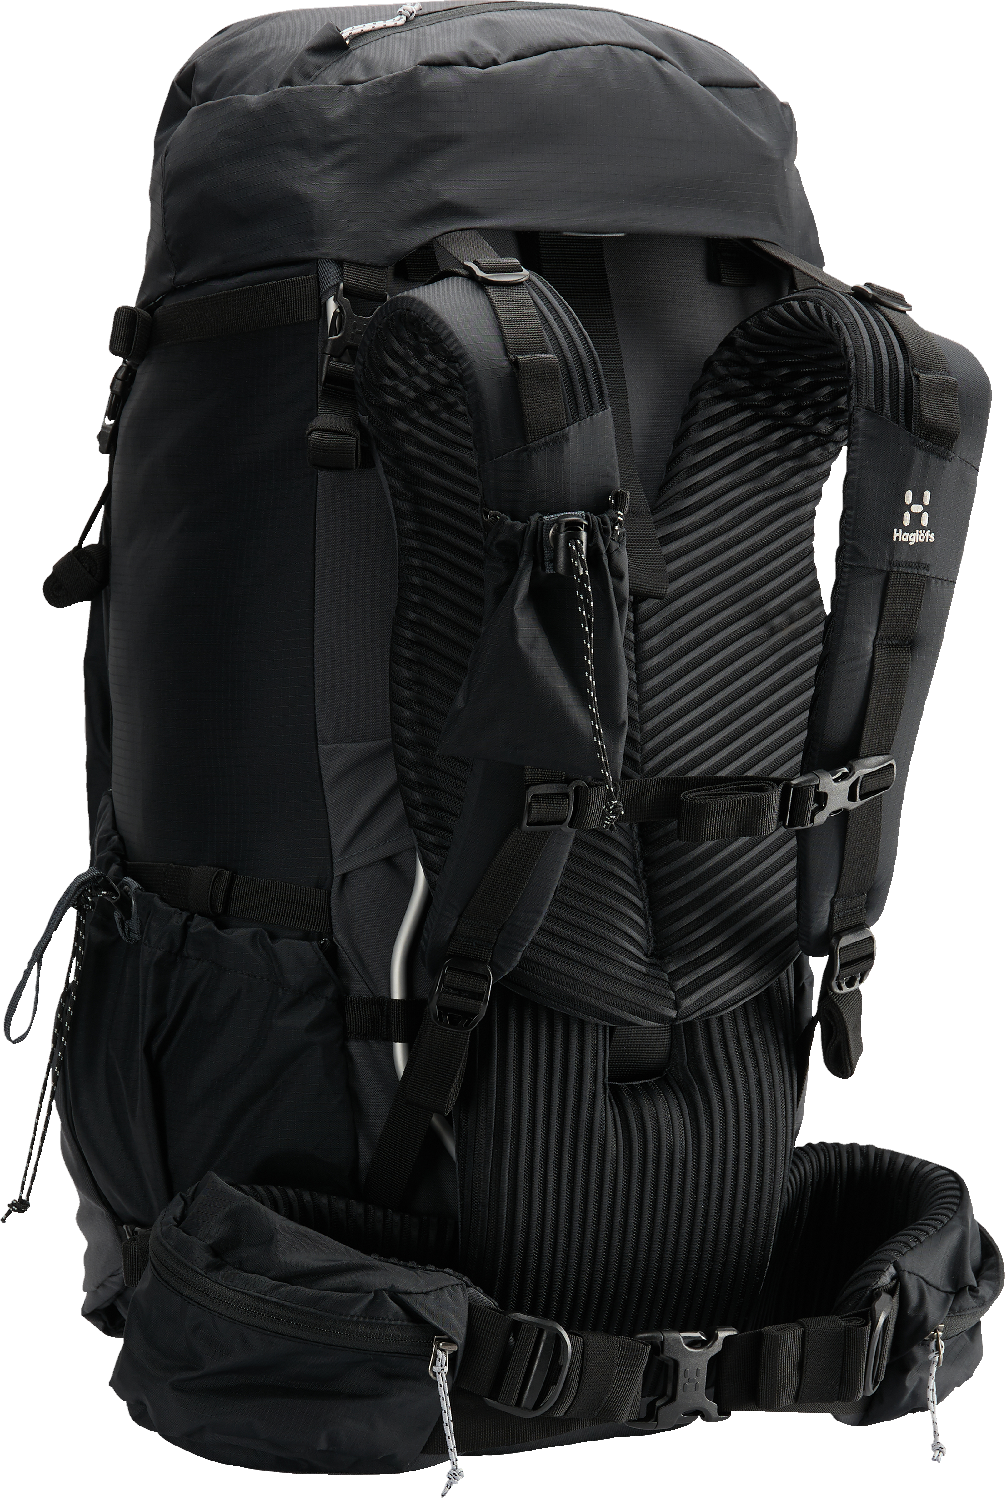 Rucksack bags 90 litres travel bag for men tourist bag for travel backpack  Trekk | eBay